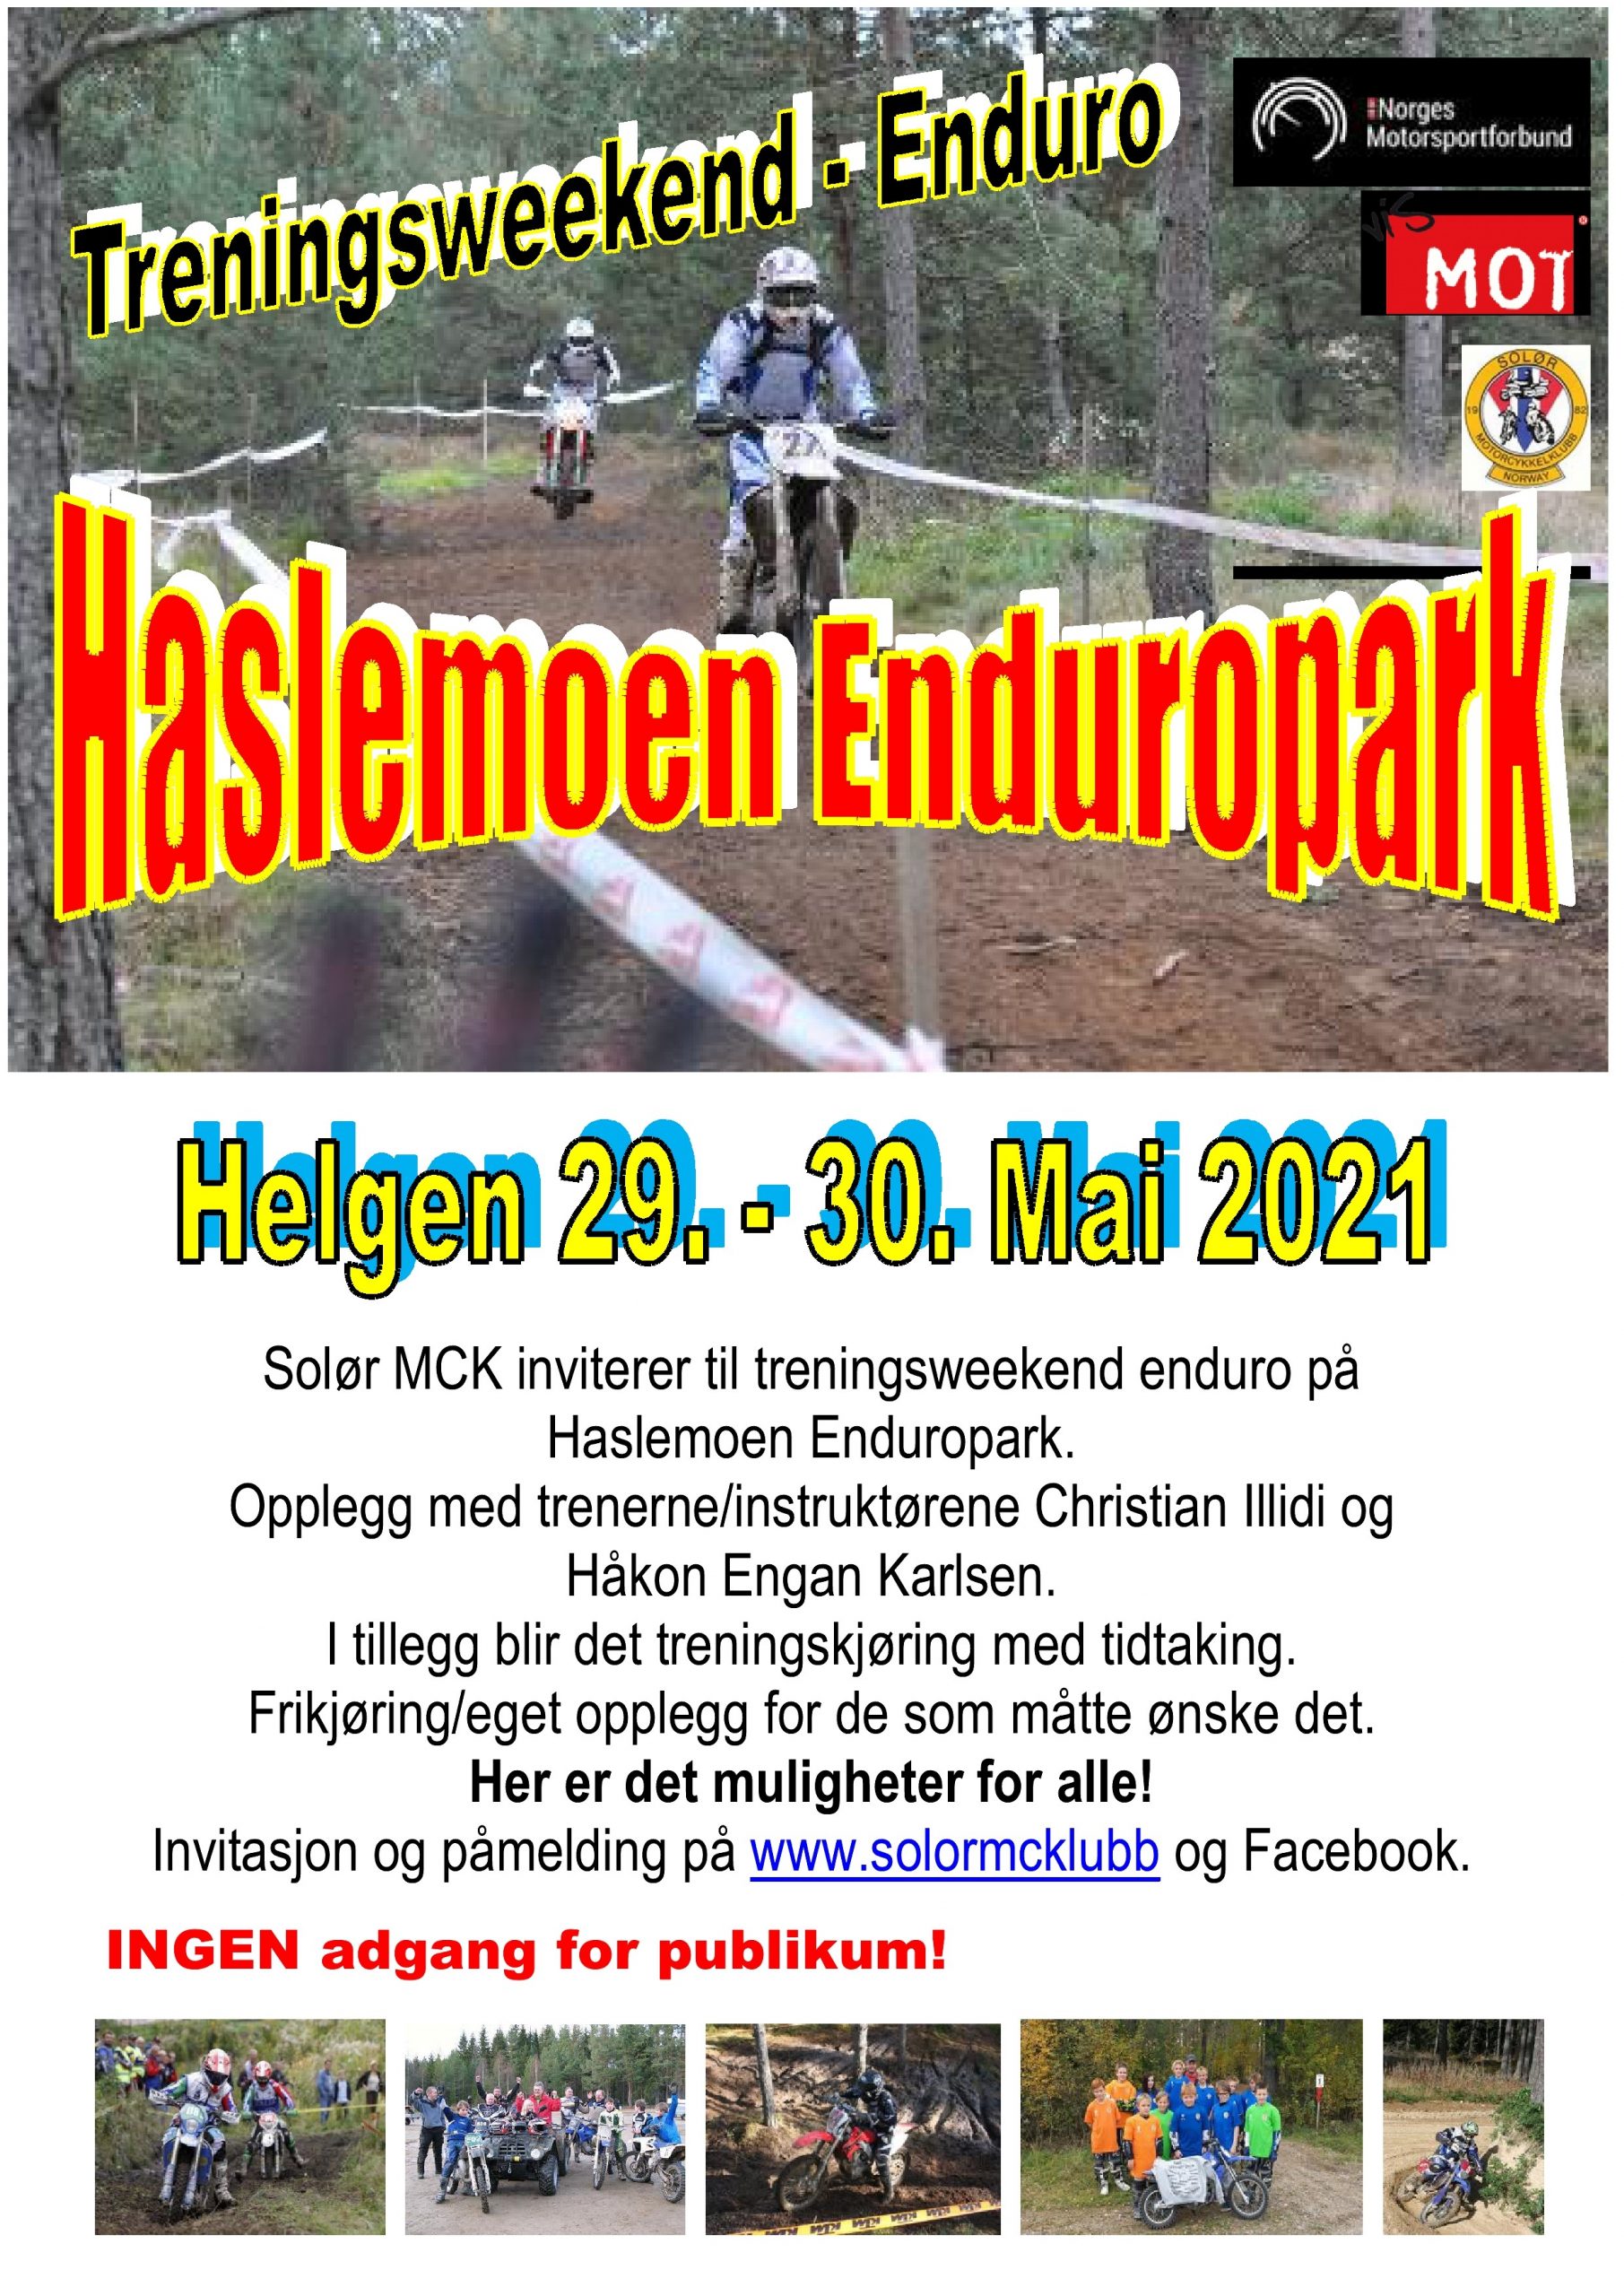 2 - POSTER treningsweekend enduro - Haslemoen Enduropark - mai 2021